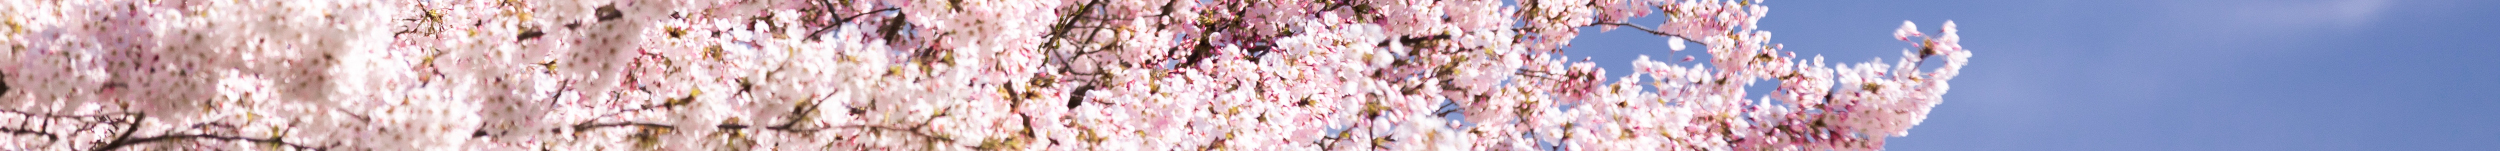 Cherry blossom banner